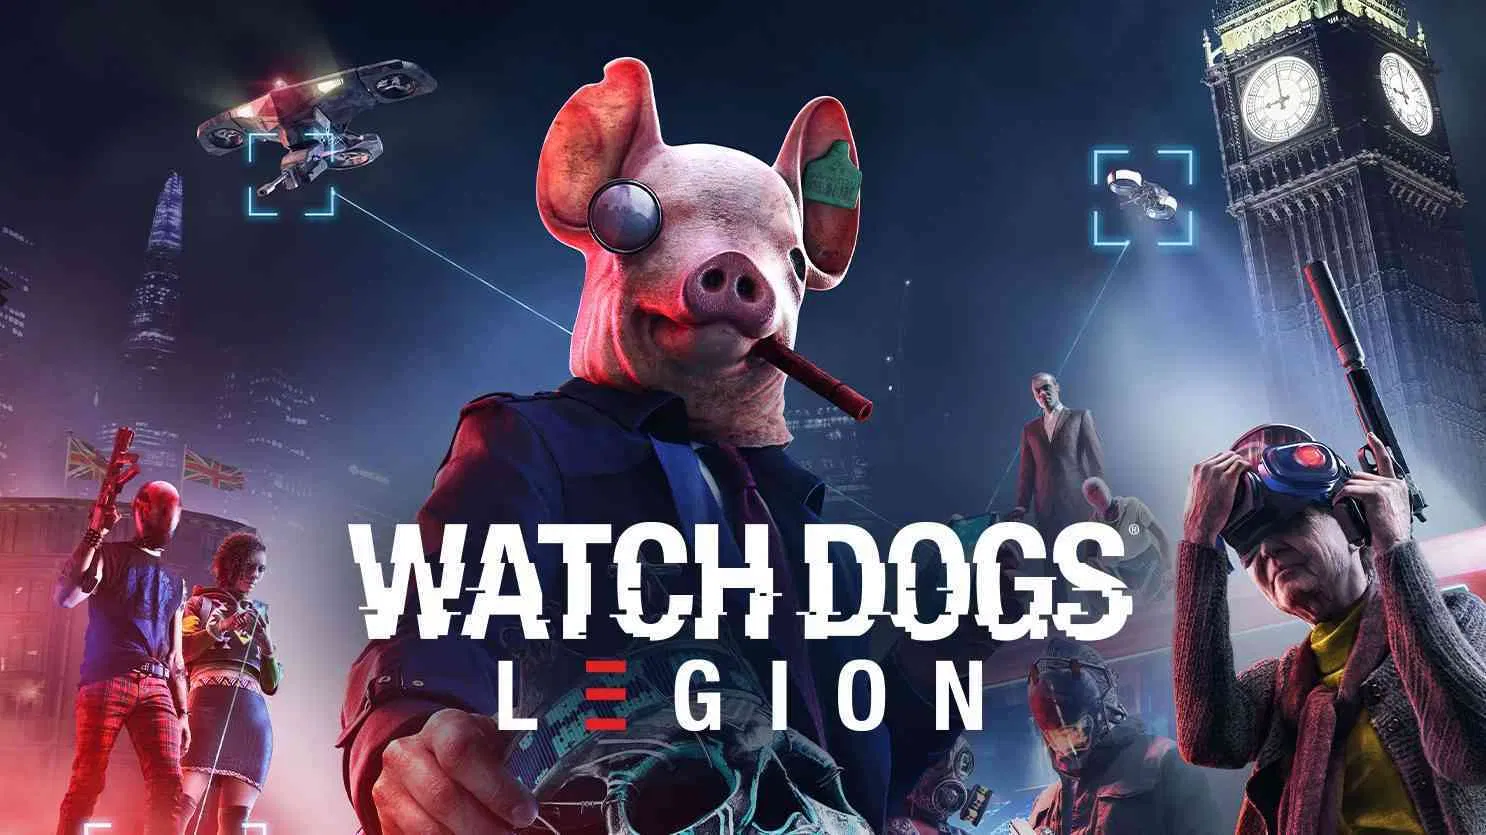 Watch dogs legion: novas imagens vazadas do game | c4617717 cropped watch dogs legion logo 2020 | watch dogs legion notícias